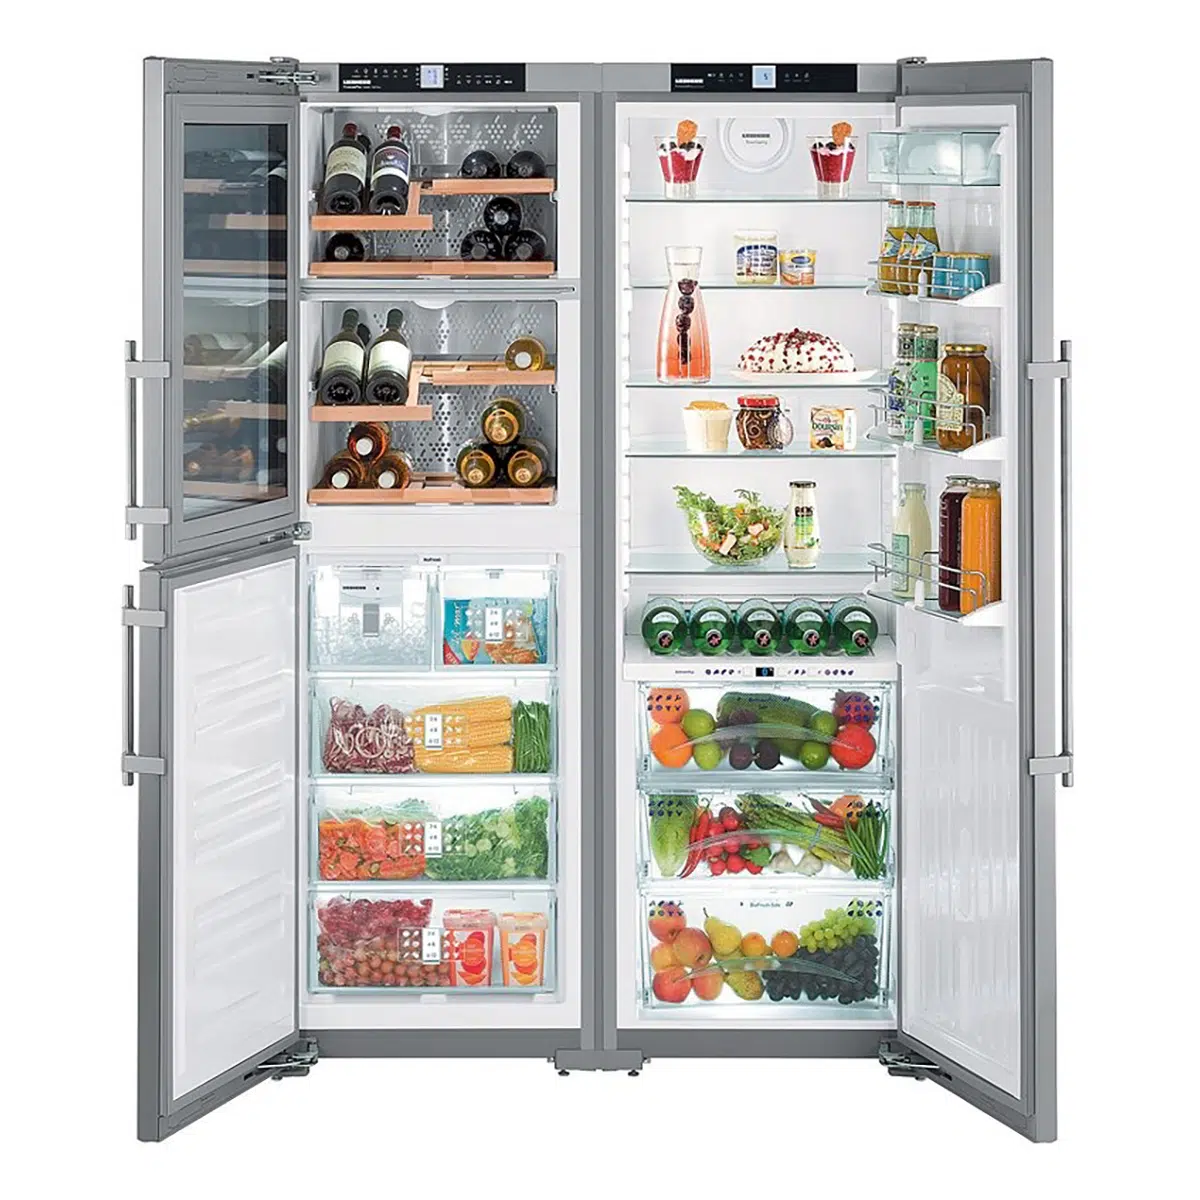 Tủ lạnh Liebherr side by side kèm tủ rượu vang tiện lợi cho nhiều nhu cầu trong 1 tủ